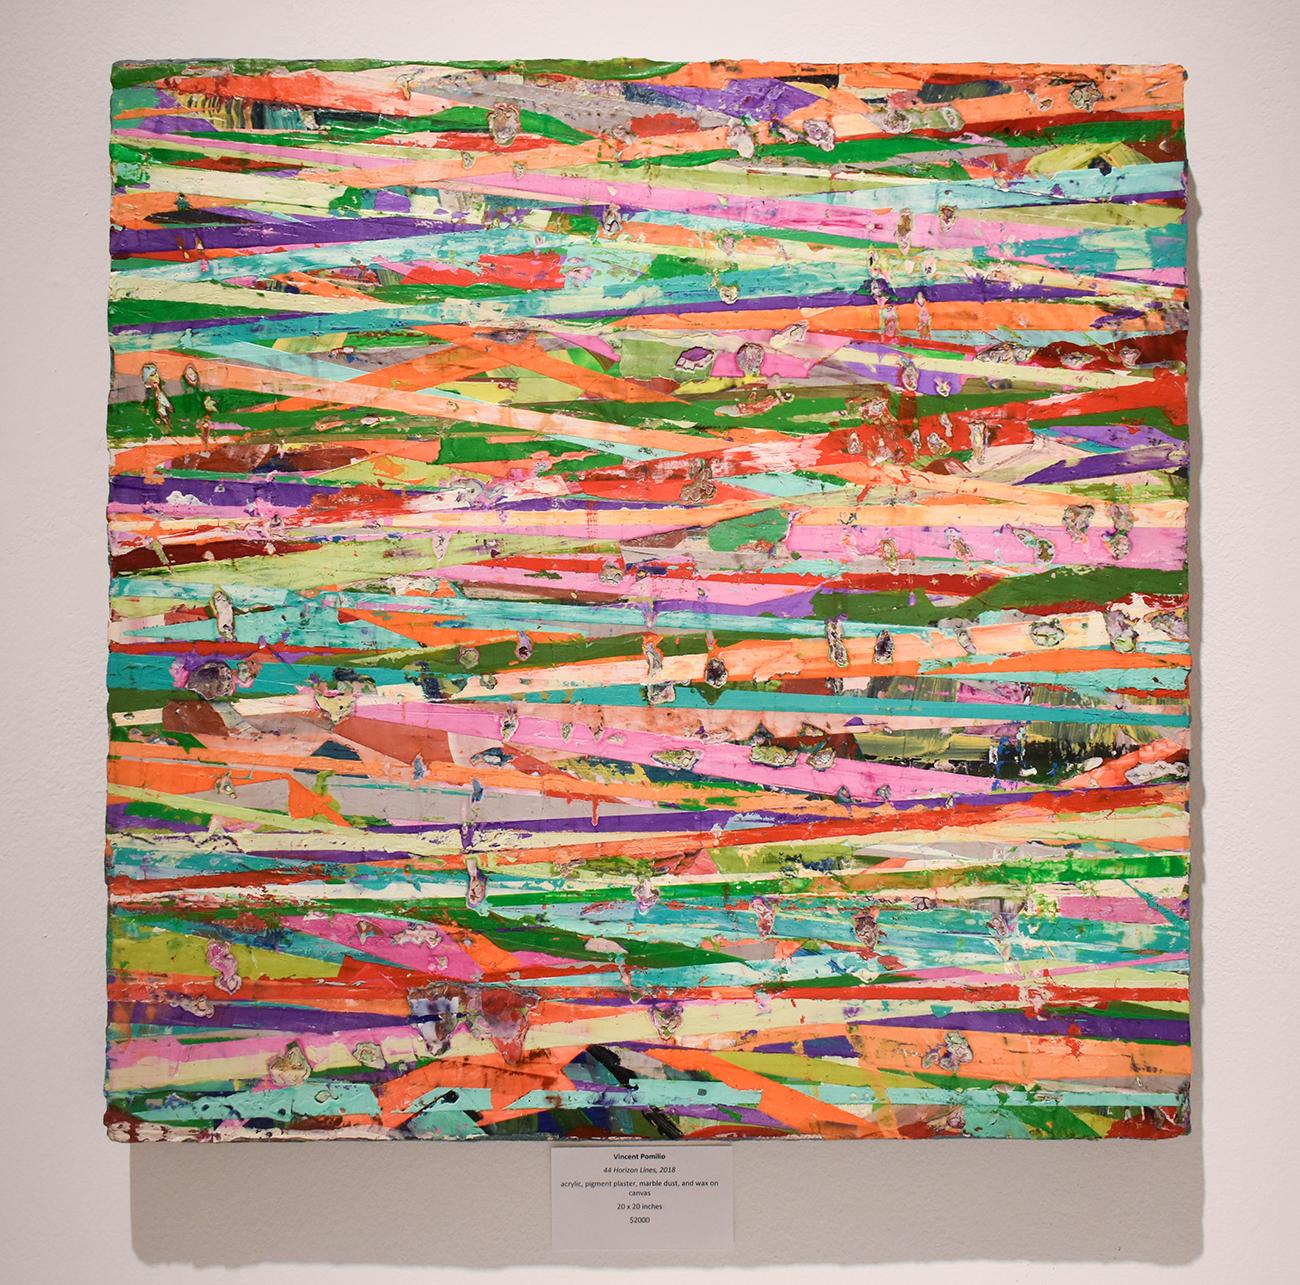 44 Horizon Lines (Modern, farbenfrohes, abstraktes Gemälde mit horizontalen Streifen) (Abstrakt), Mixed Media Art, von Vincent Pomilio